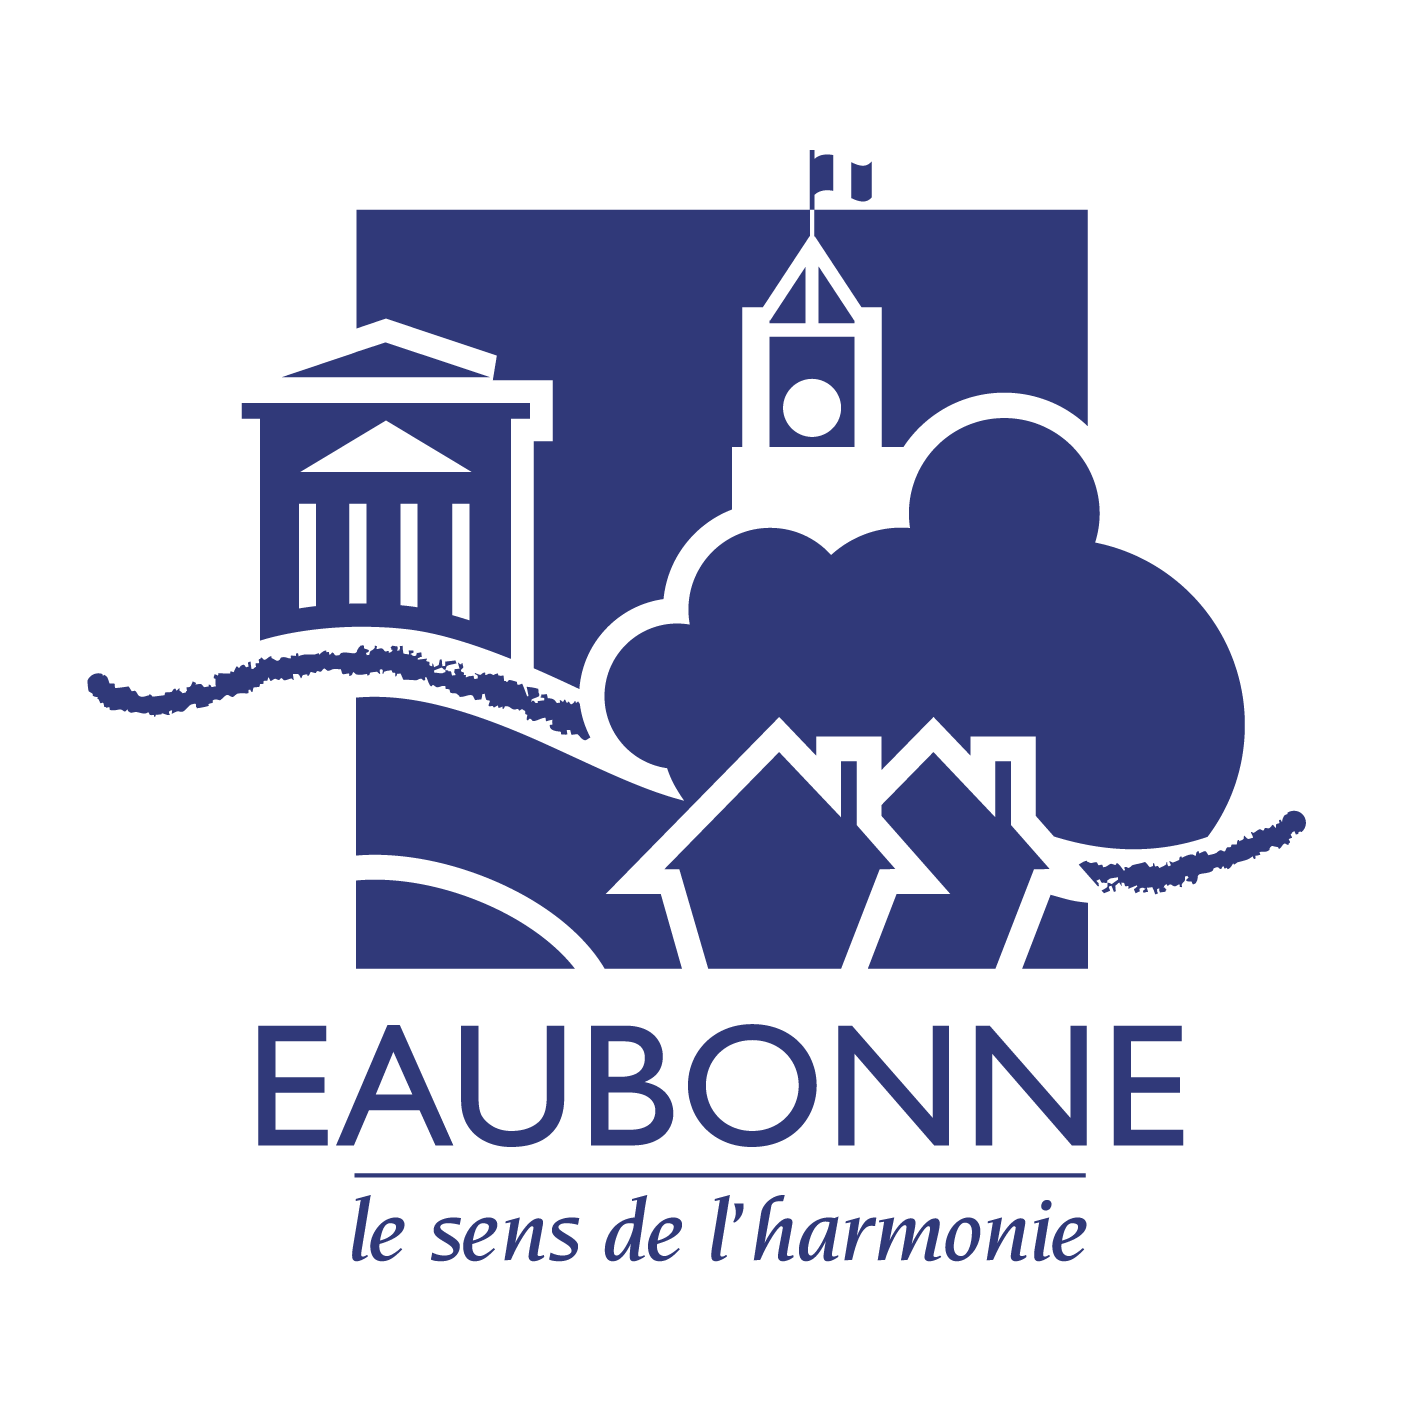 Le logo d'Eaubonne